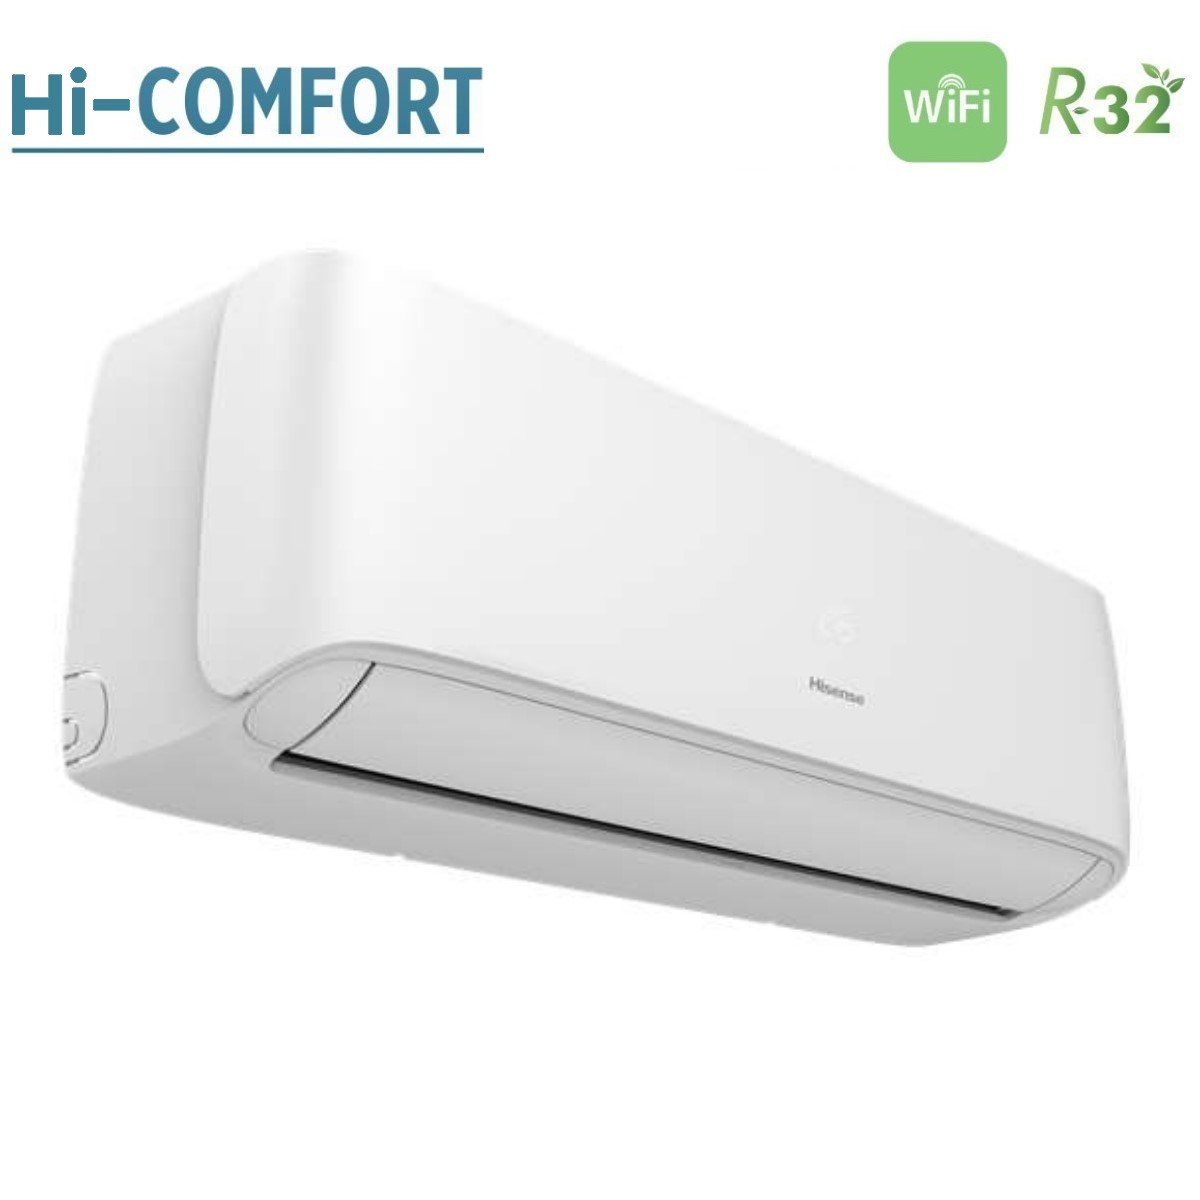 immagine-3-hisense-climatizzatore-condizionatore-hisense-dual-split-inverter-serie-hi-comfort-79-con-2amw35u4rgc-r-32-wi-fi-integrato-70009000-novita